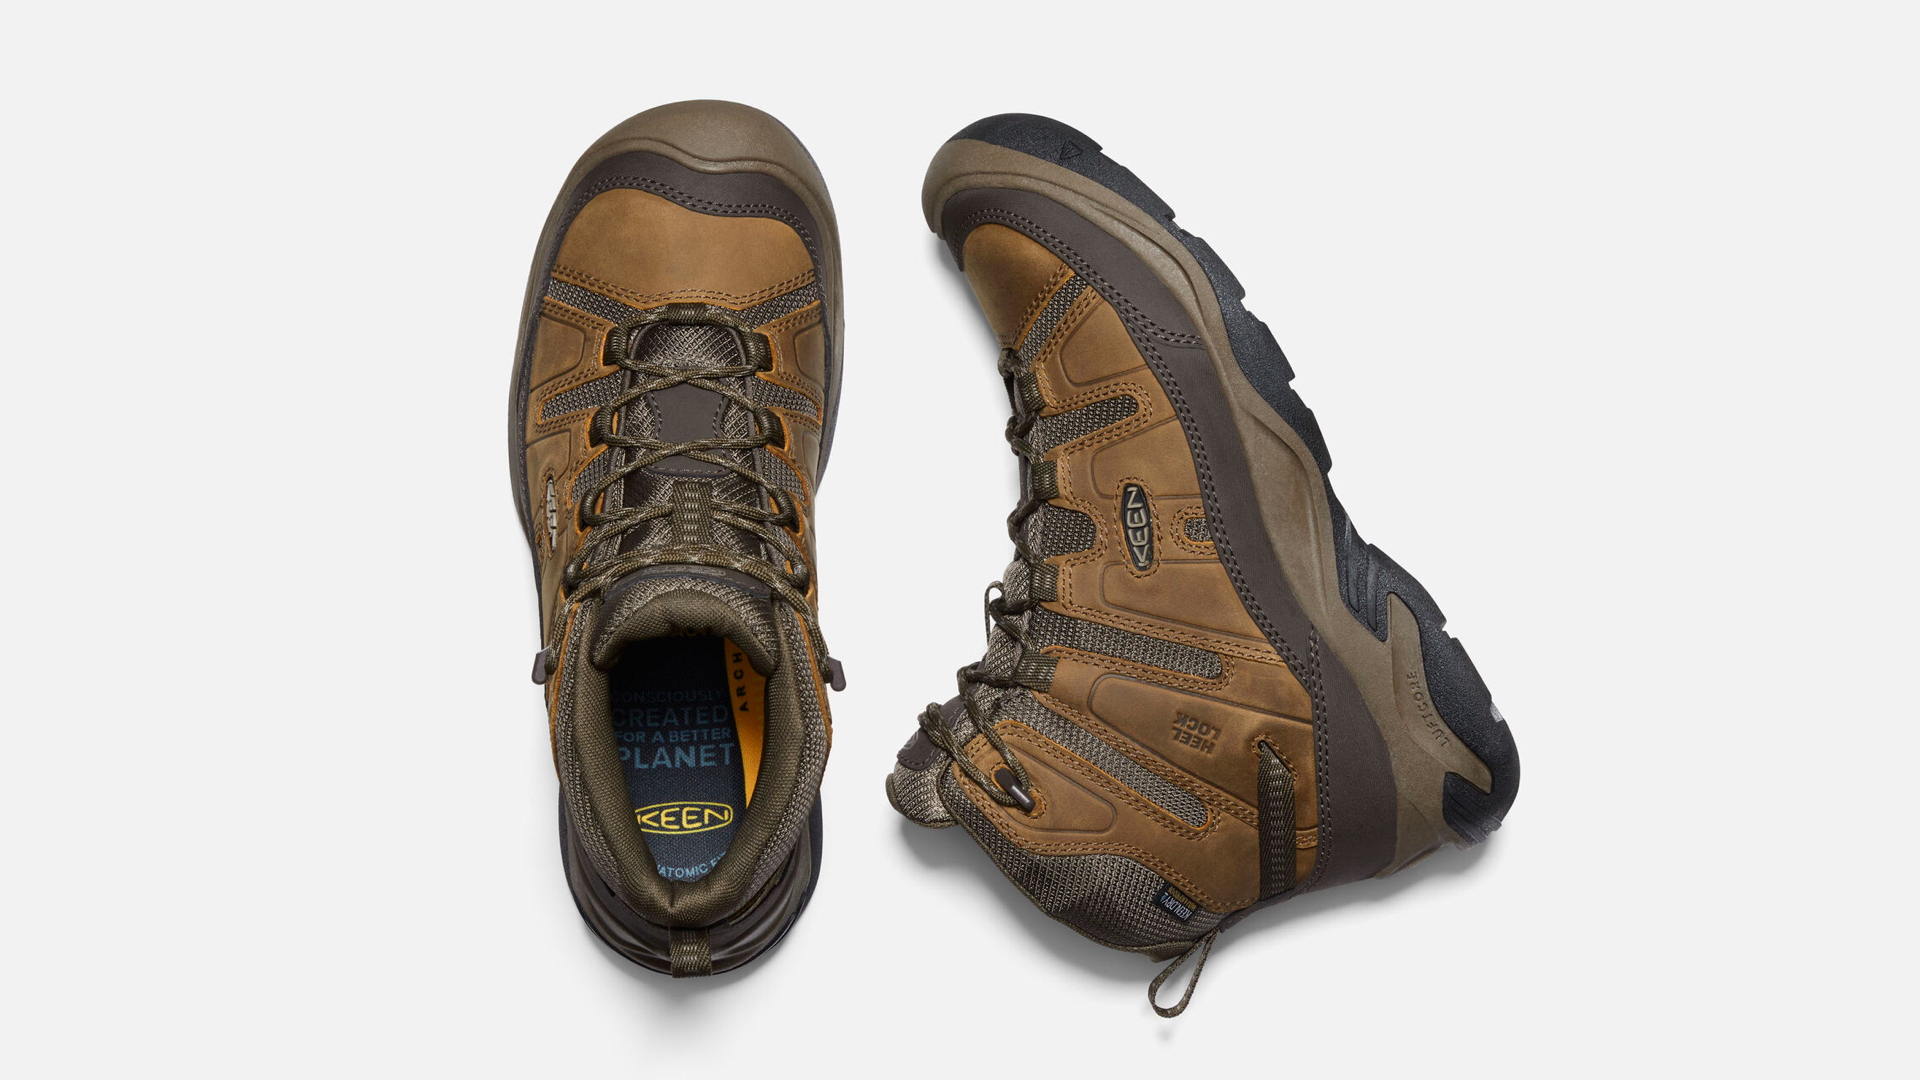 KEEN Circadia Waterproof mid hiking boot review: eco comfort | Advnture